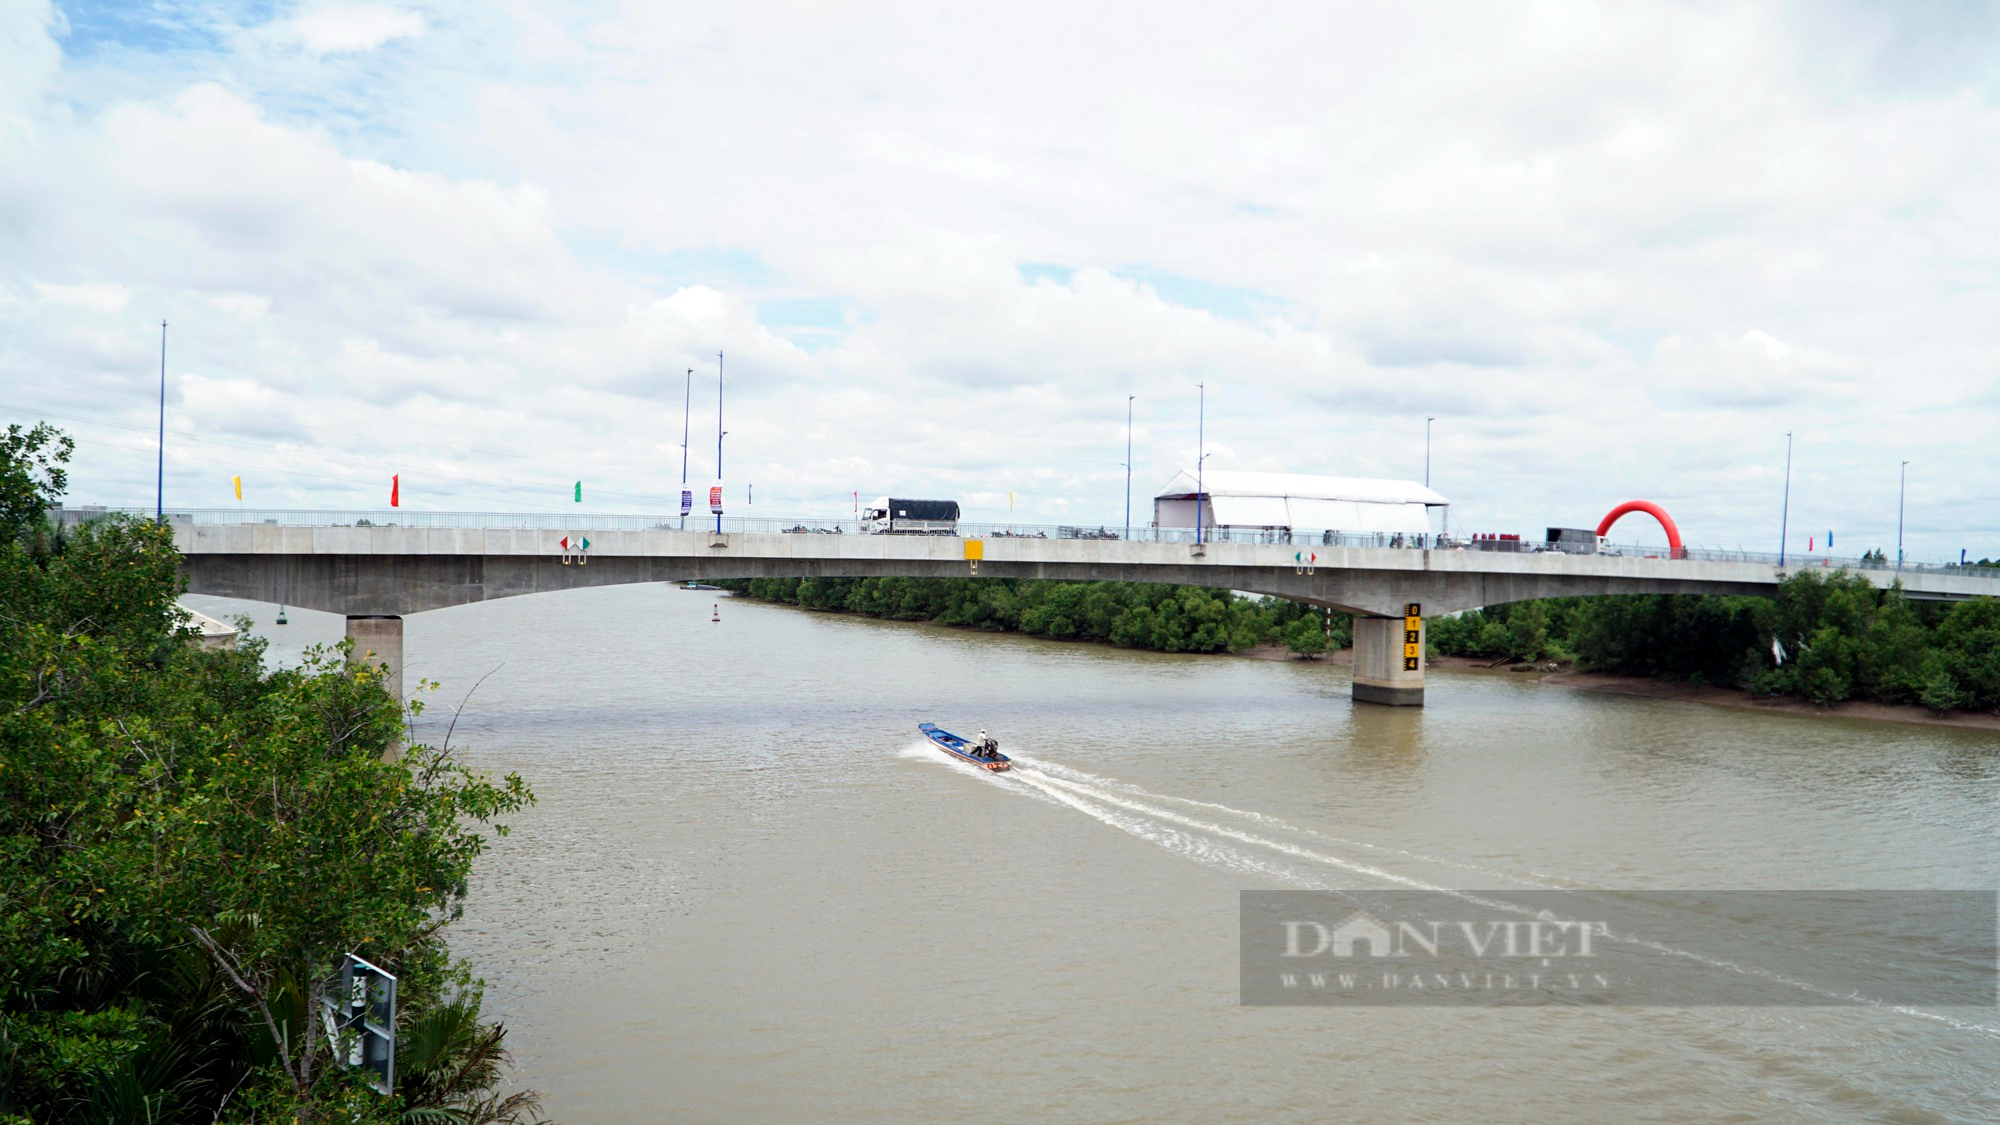 Diện mạo cây cầu hơn 340 tỷ đồng tại huyện Cần Giờ trong ngày thông xe - Ảnh 8.